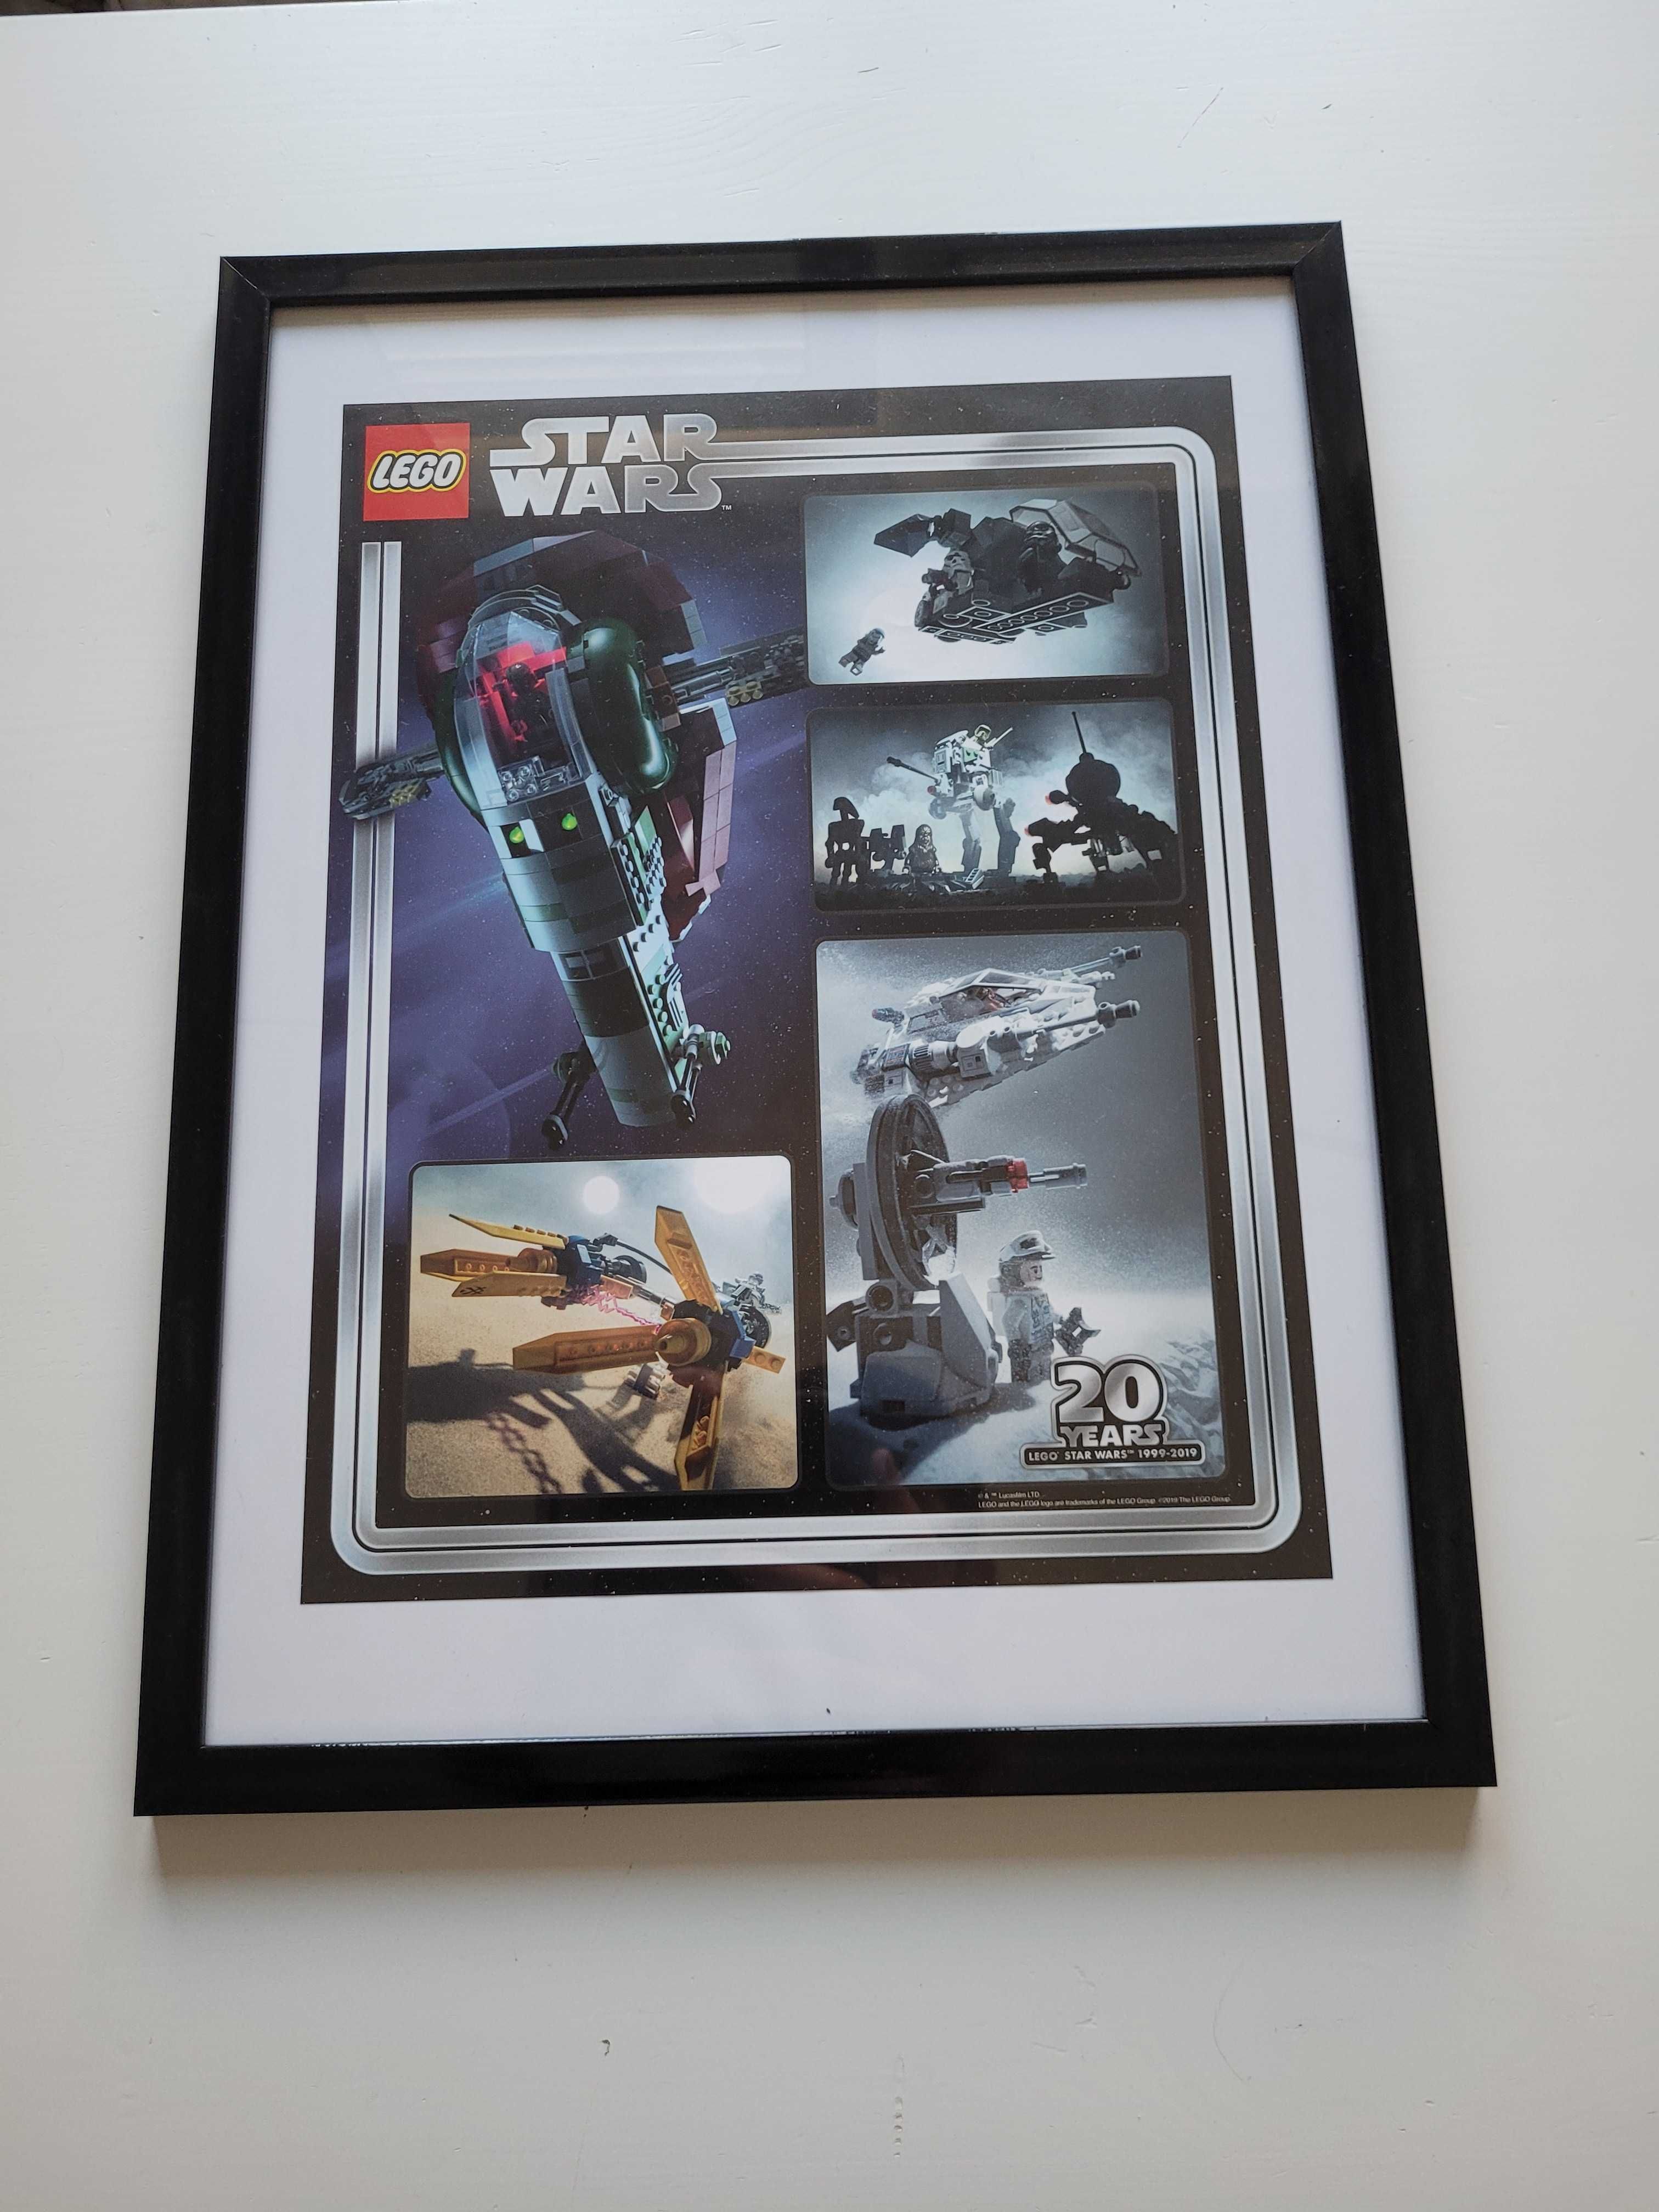 Lego Star Wars plakat Vip 500.5888 oprawiony w ramkę 42,5 x 32,5 cm